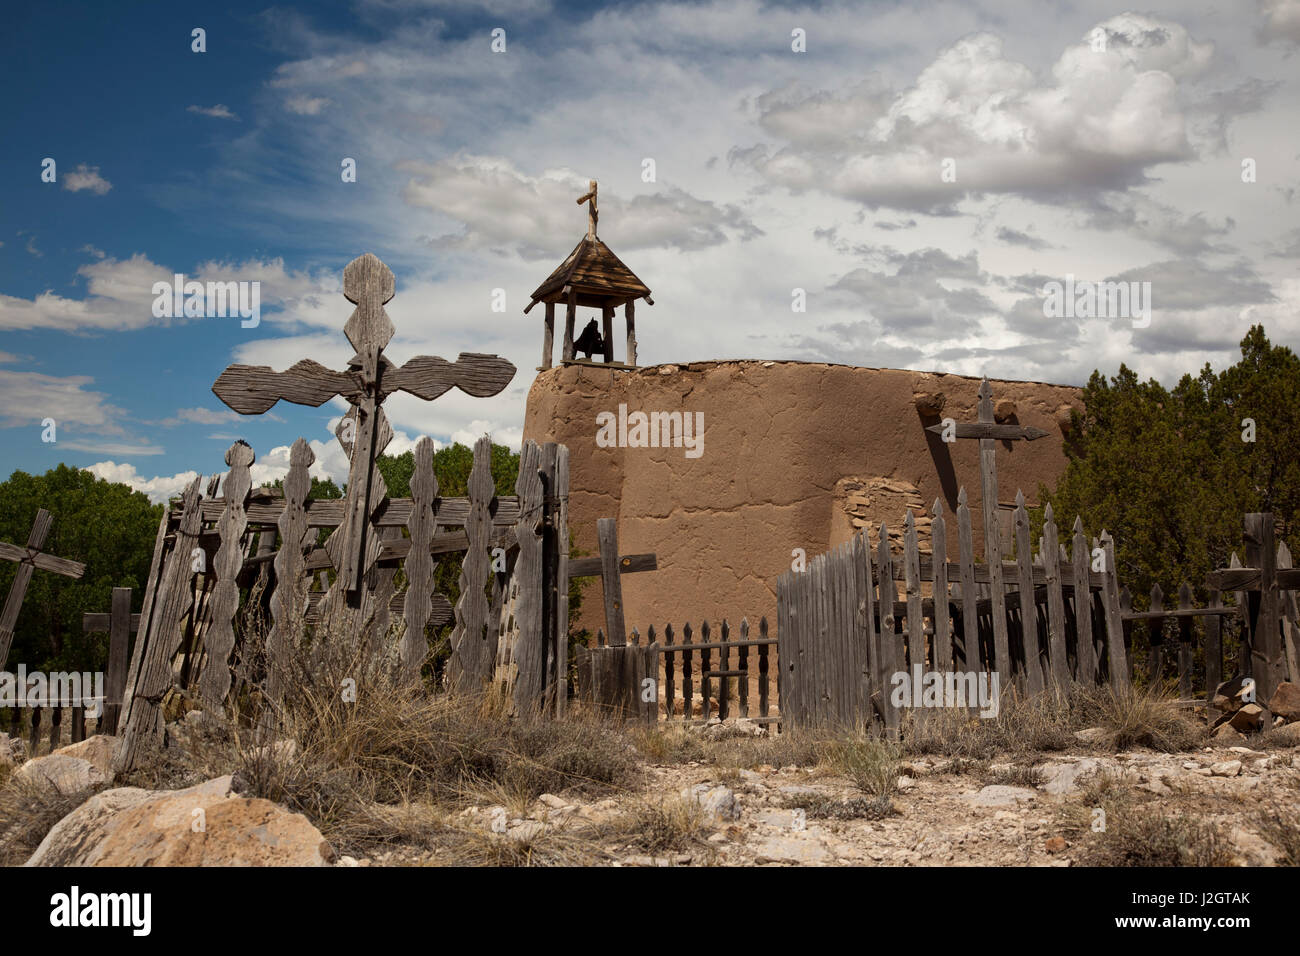 Adobe Mattone chiesa e cimitero utilizzato dai coloni spagnoli nei primi del settecento in Nuovo Messico dai coloni spagnoli. El Rancho de Las Golondrinas (Ranch di rondini) è situato in un allevamento rurale valle vicino a Santa Fe. Foto Stock